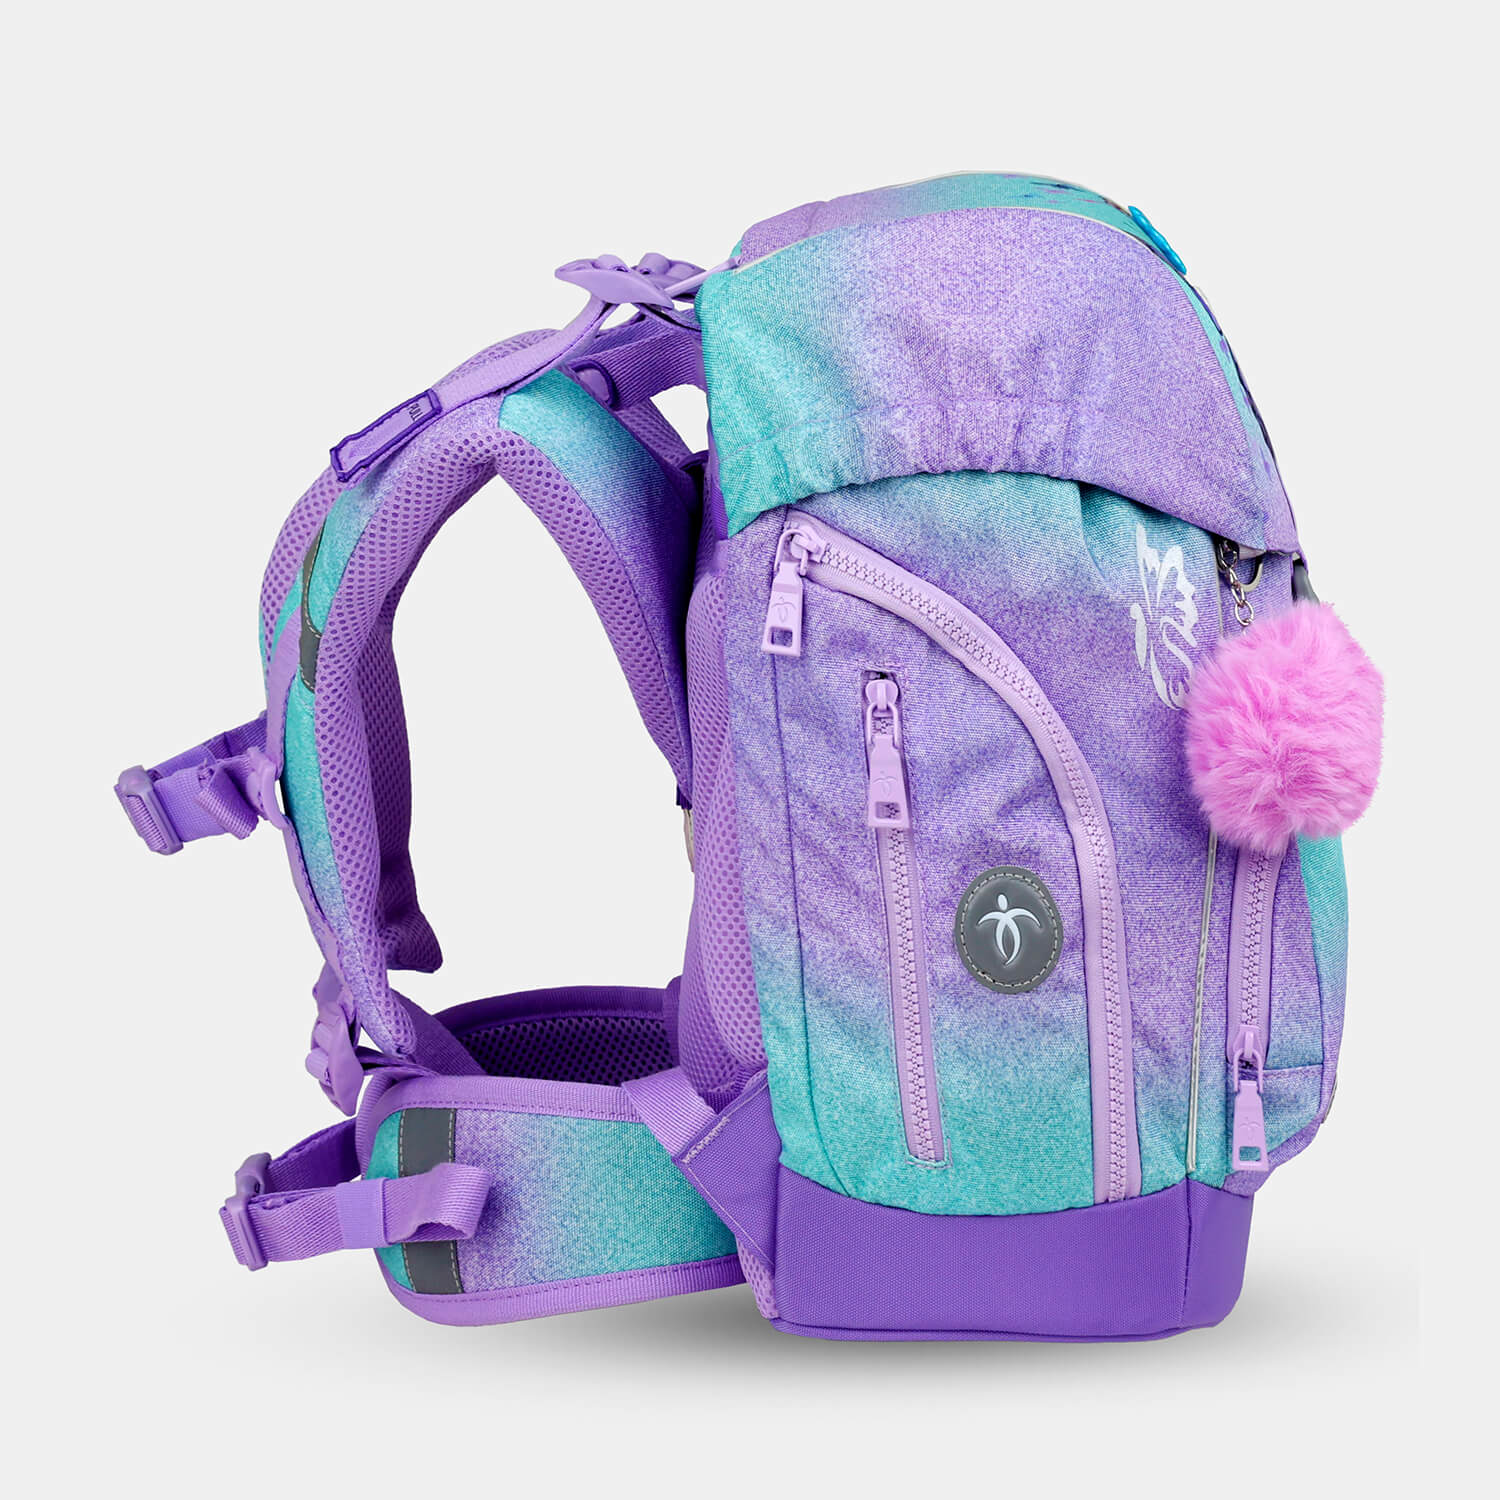 Comfy Plus Serenity Schoolbag set 5pcs.